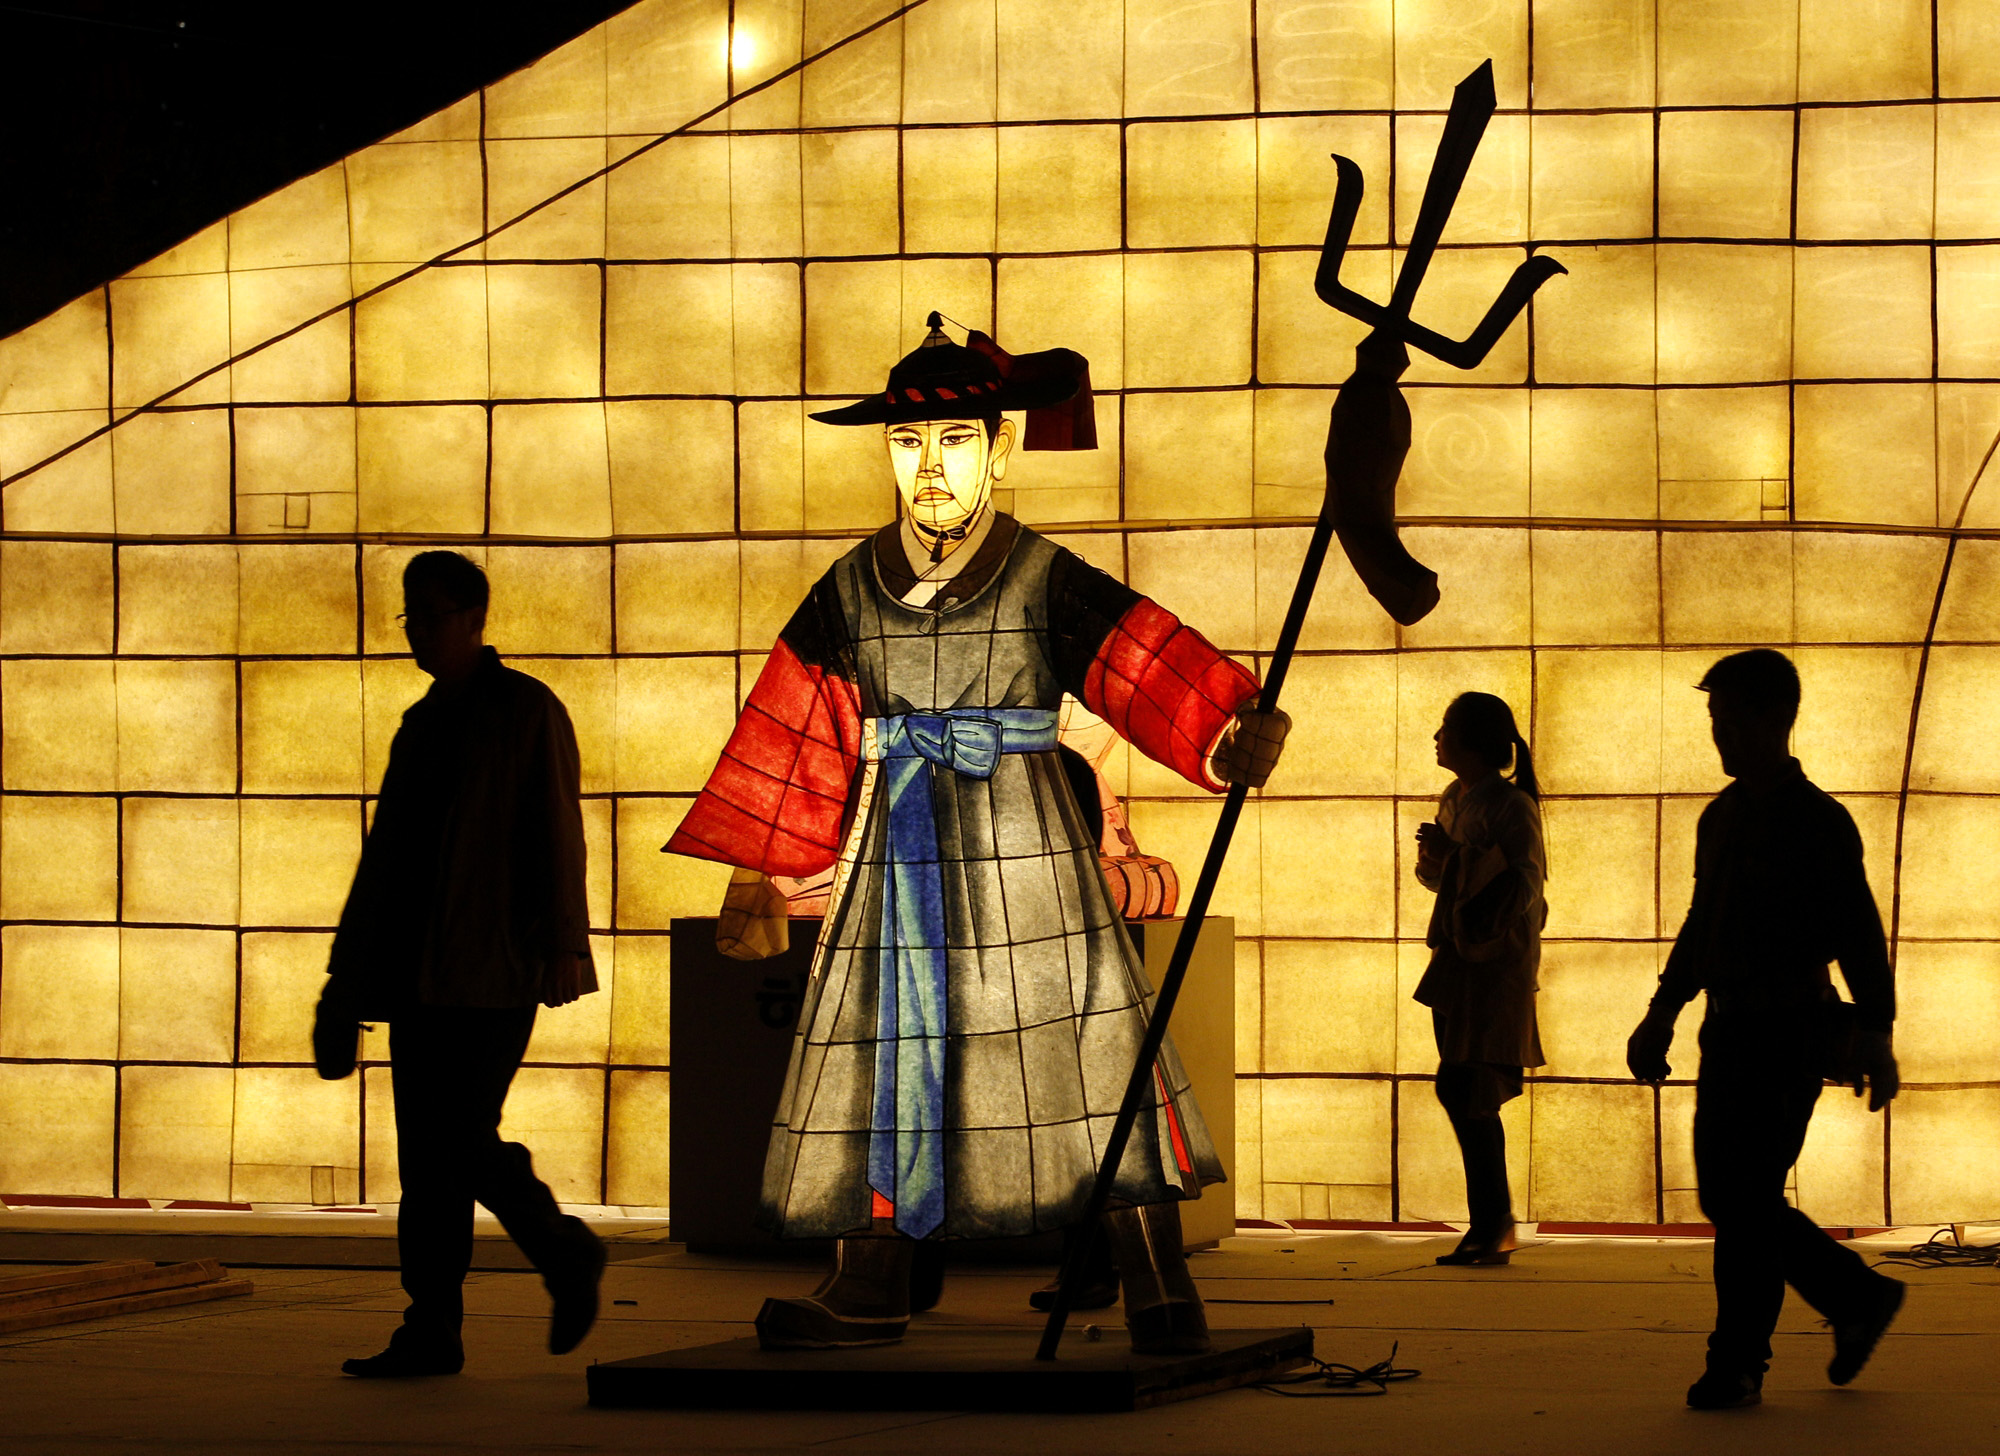 Samurai ilustración